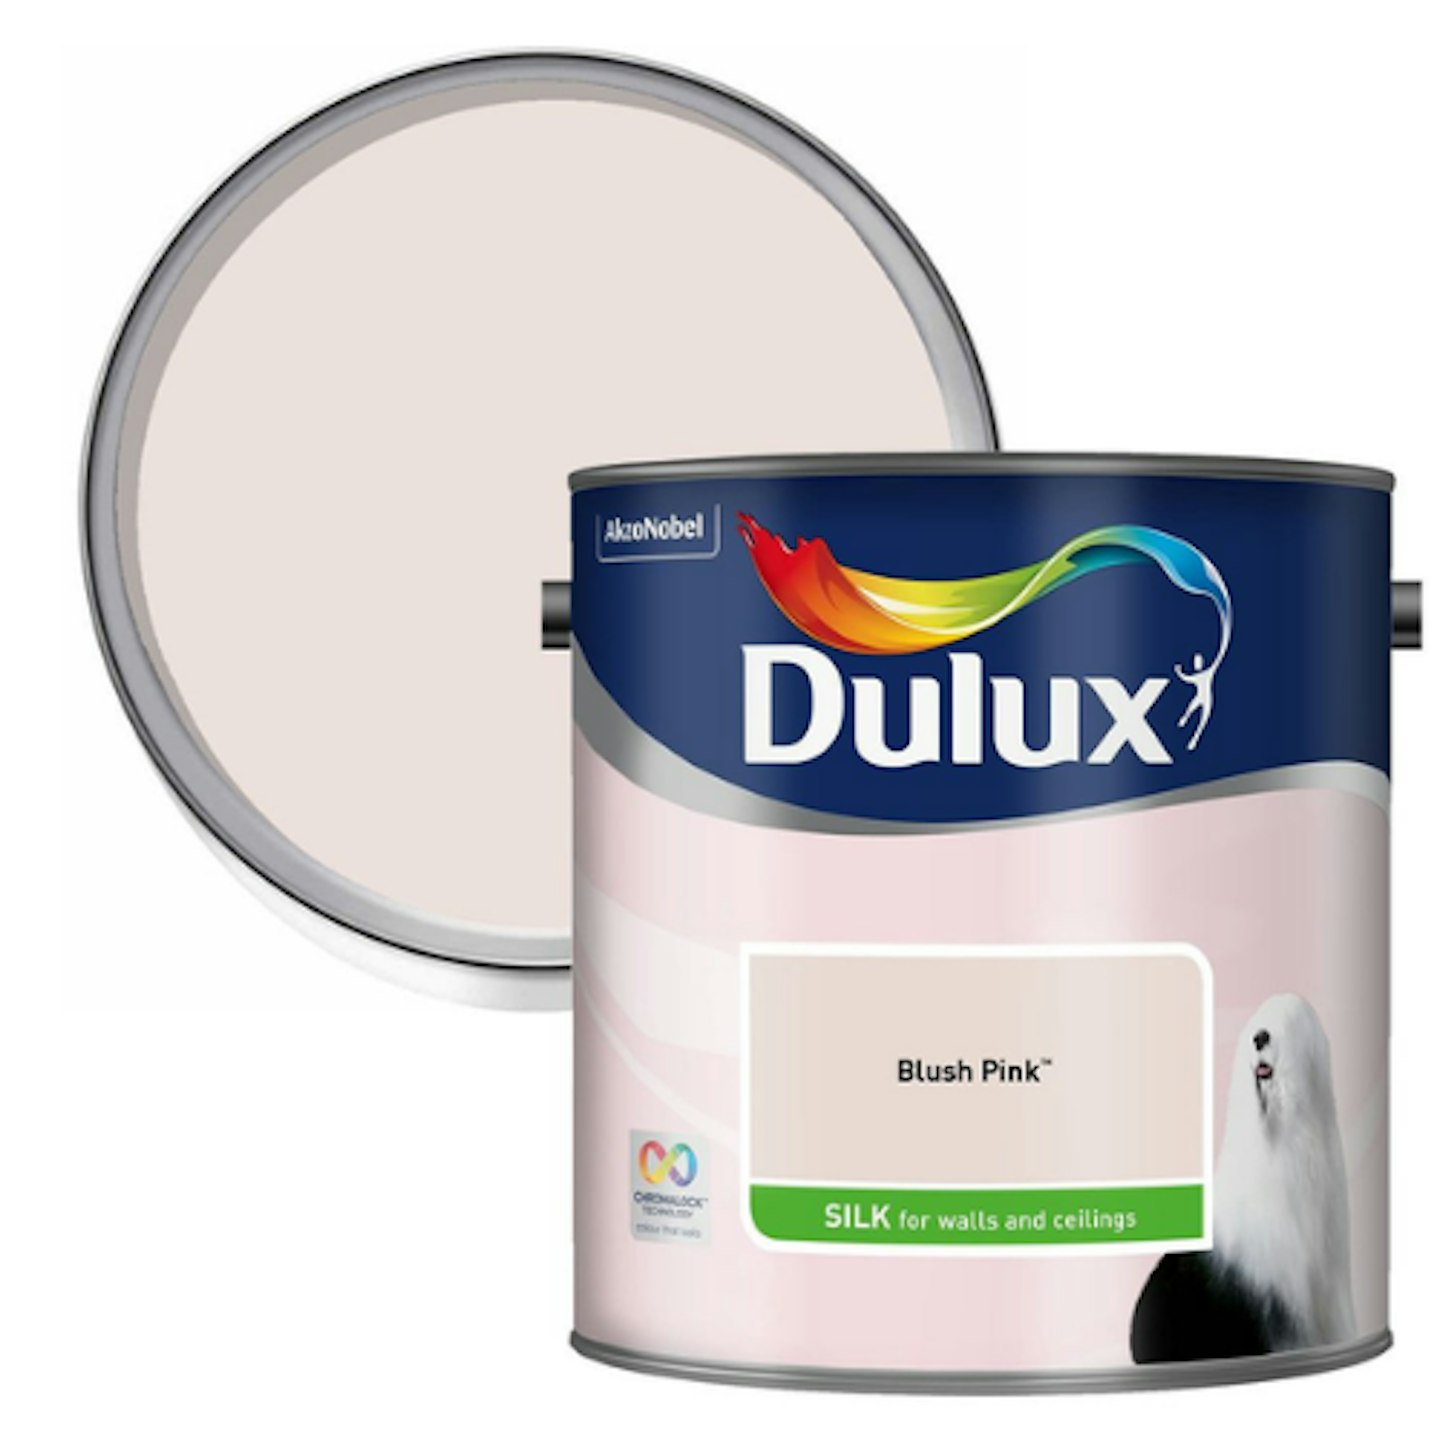 Dulux Blush Pink Silk Emulsion Paint, 2.5L